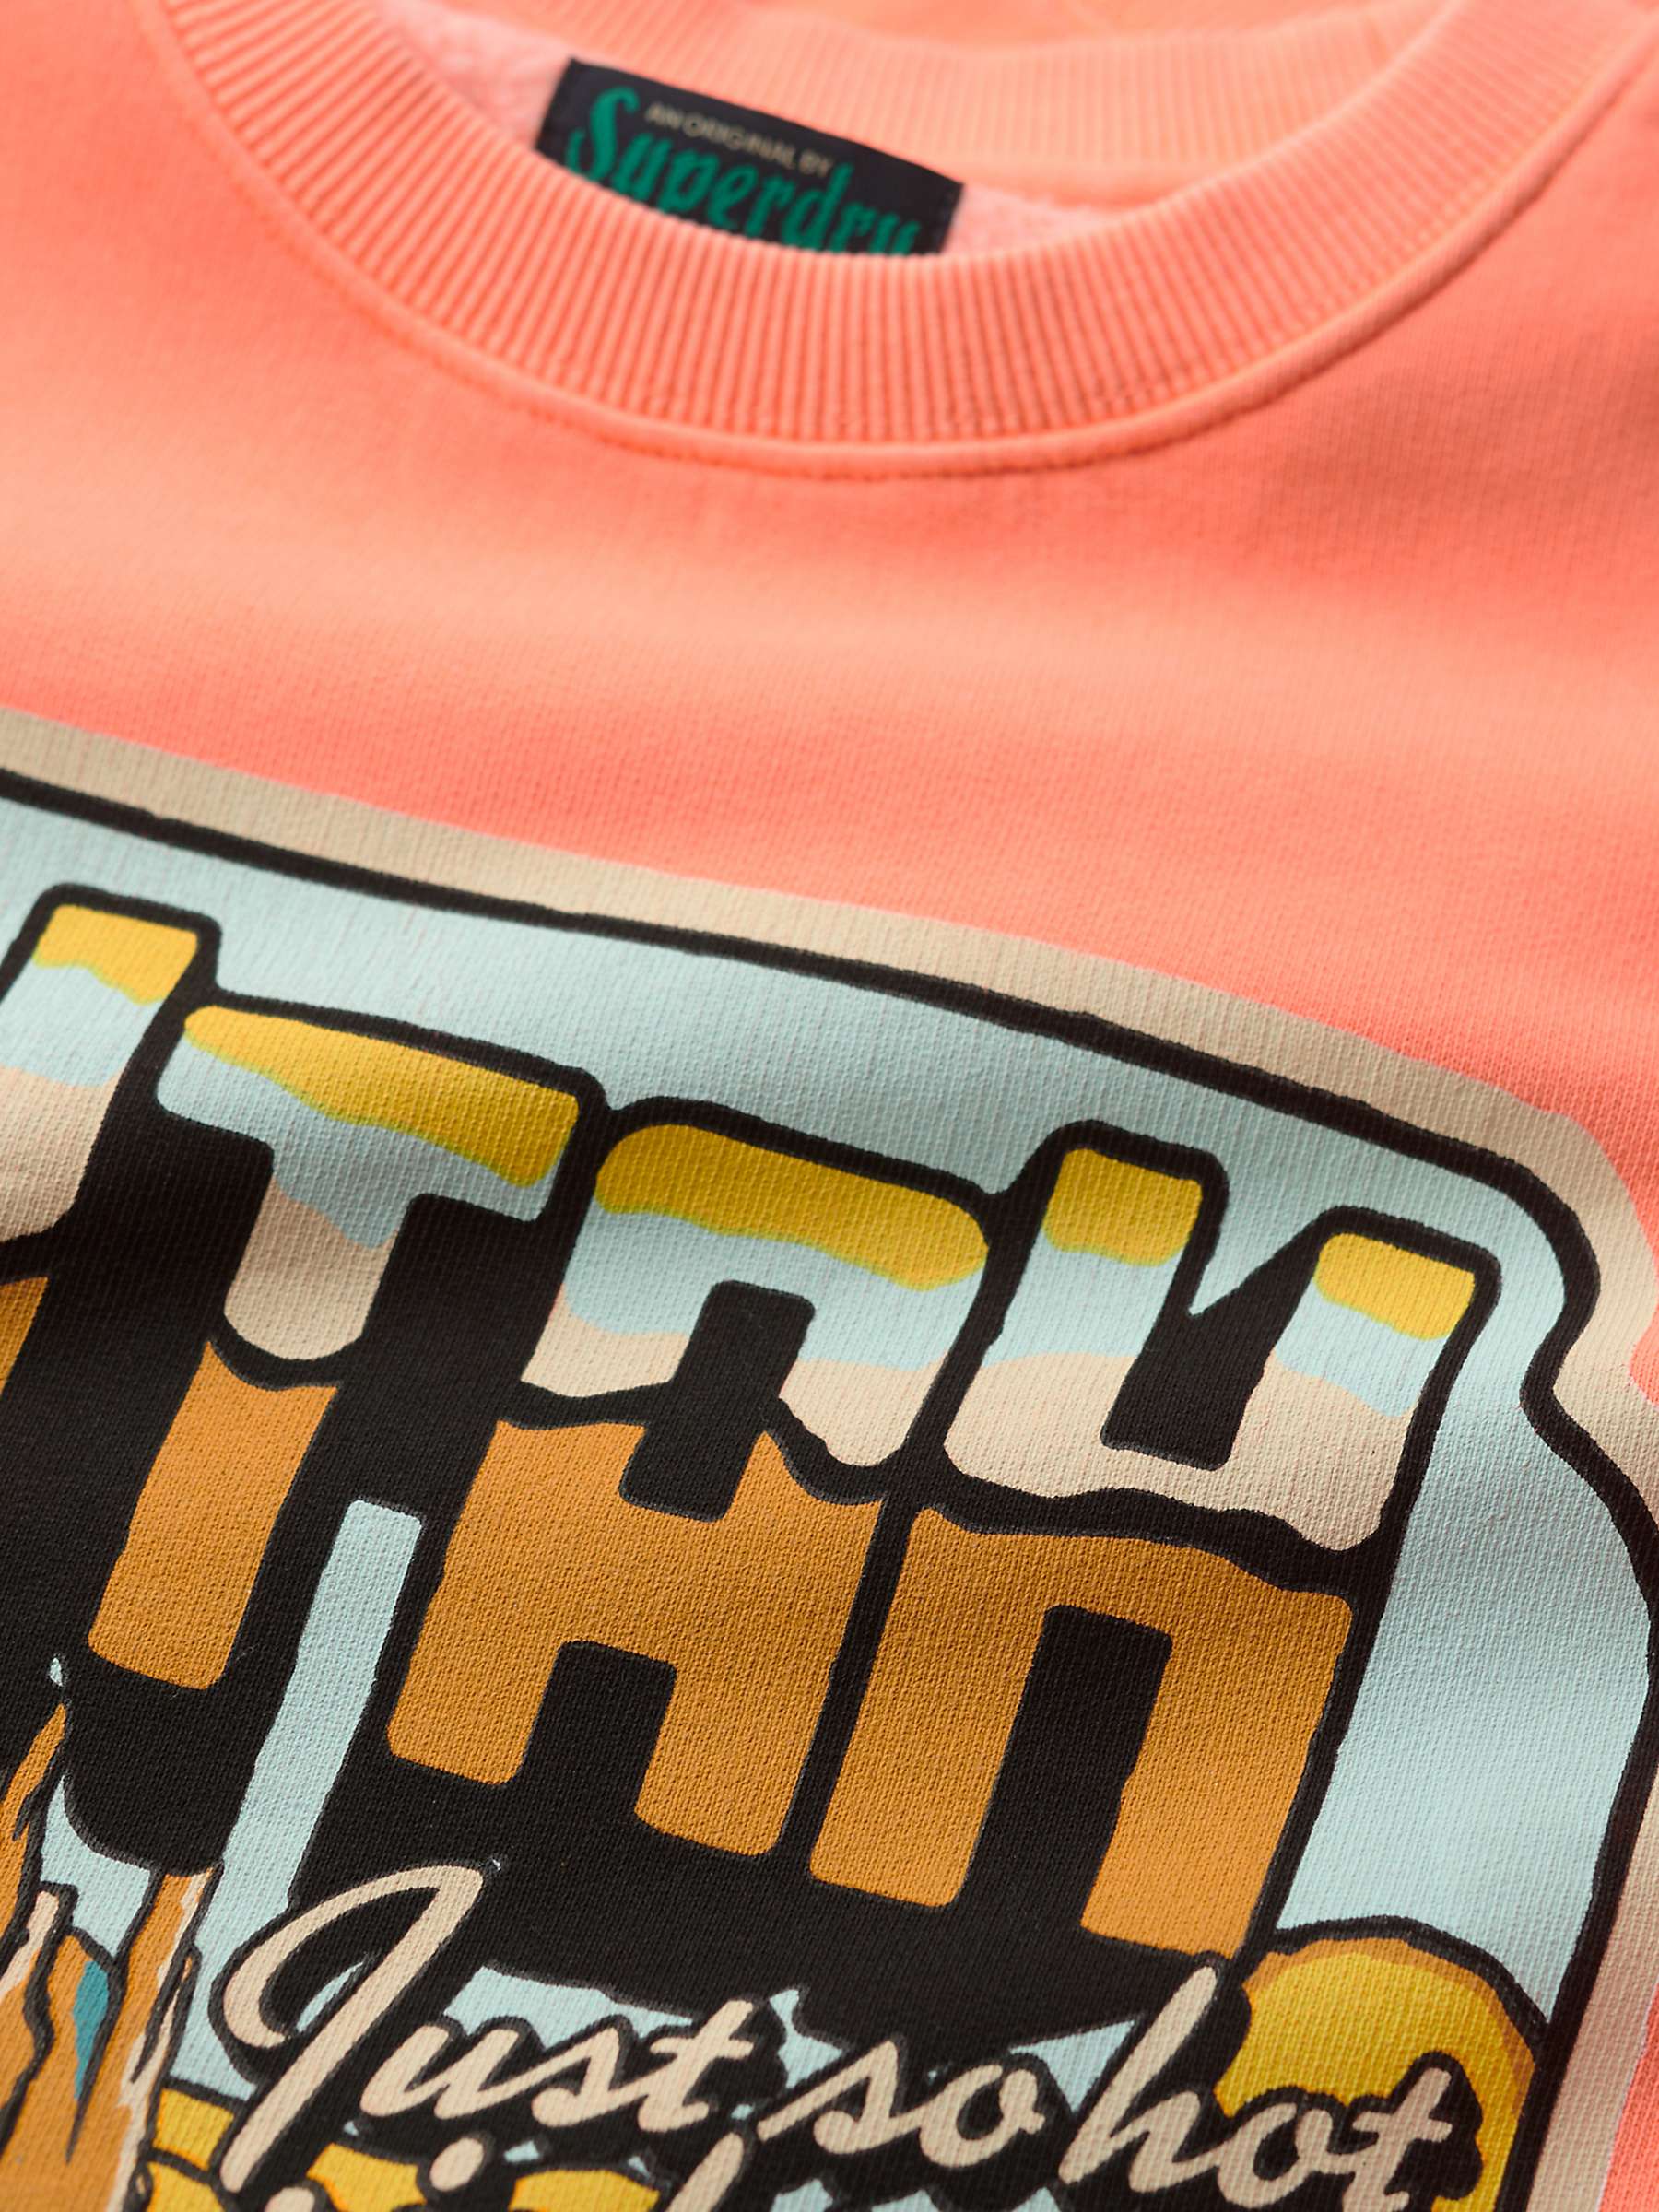 Buy Superdry Neon Travel Loose Sweatshirt, Sunblast Orange Online at johnlewis.com